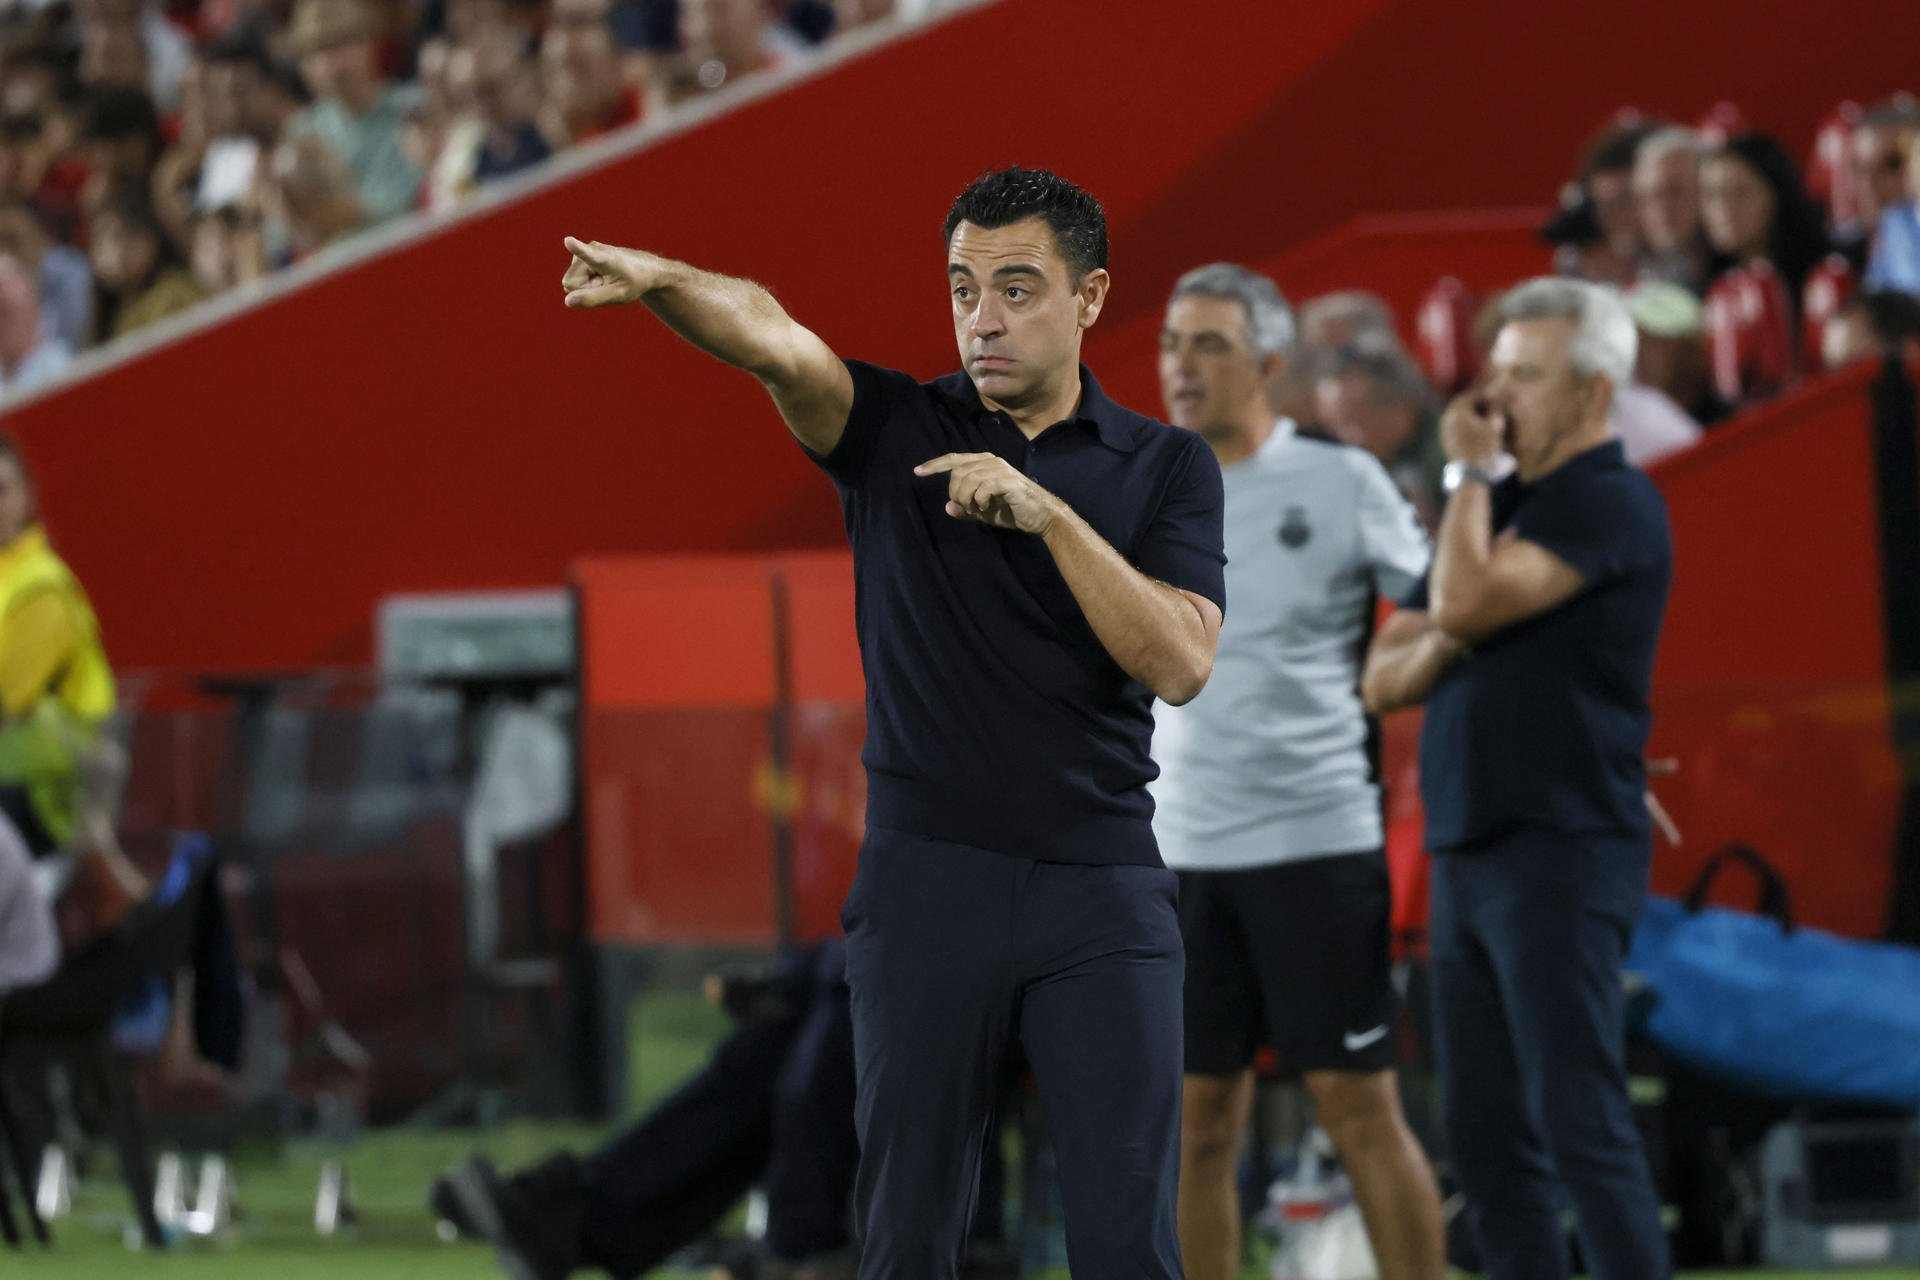 3 suspensos y 1 muy deficiente en el empate del Barça en Mallorca, Xavi Hernández, bronca descomunal